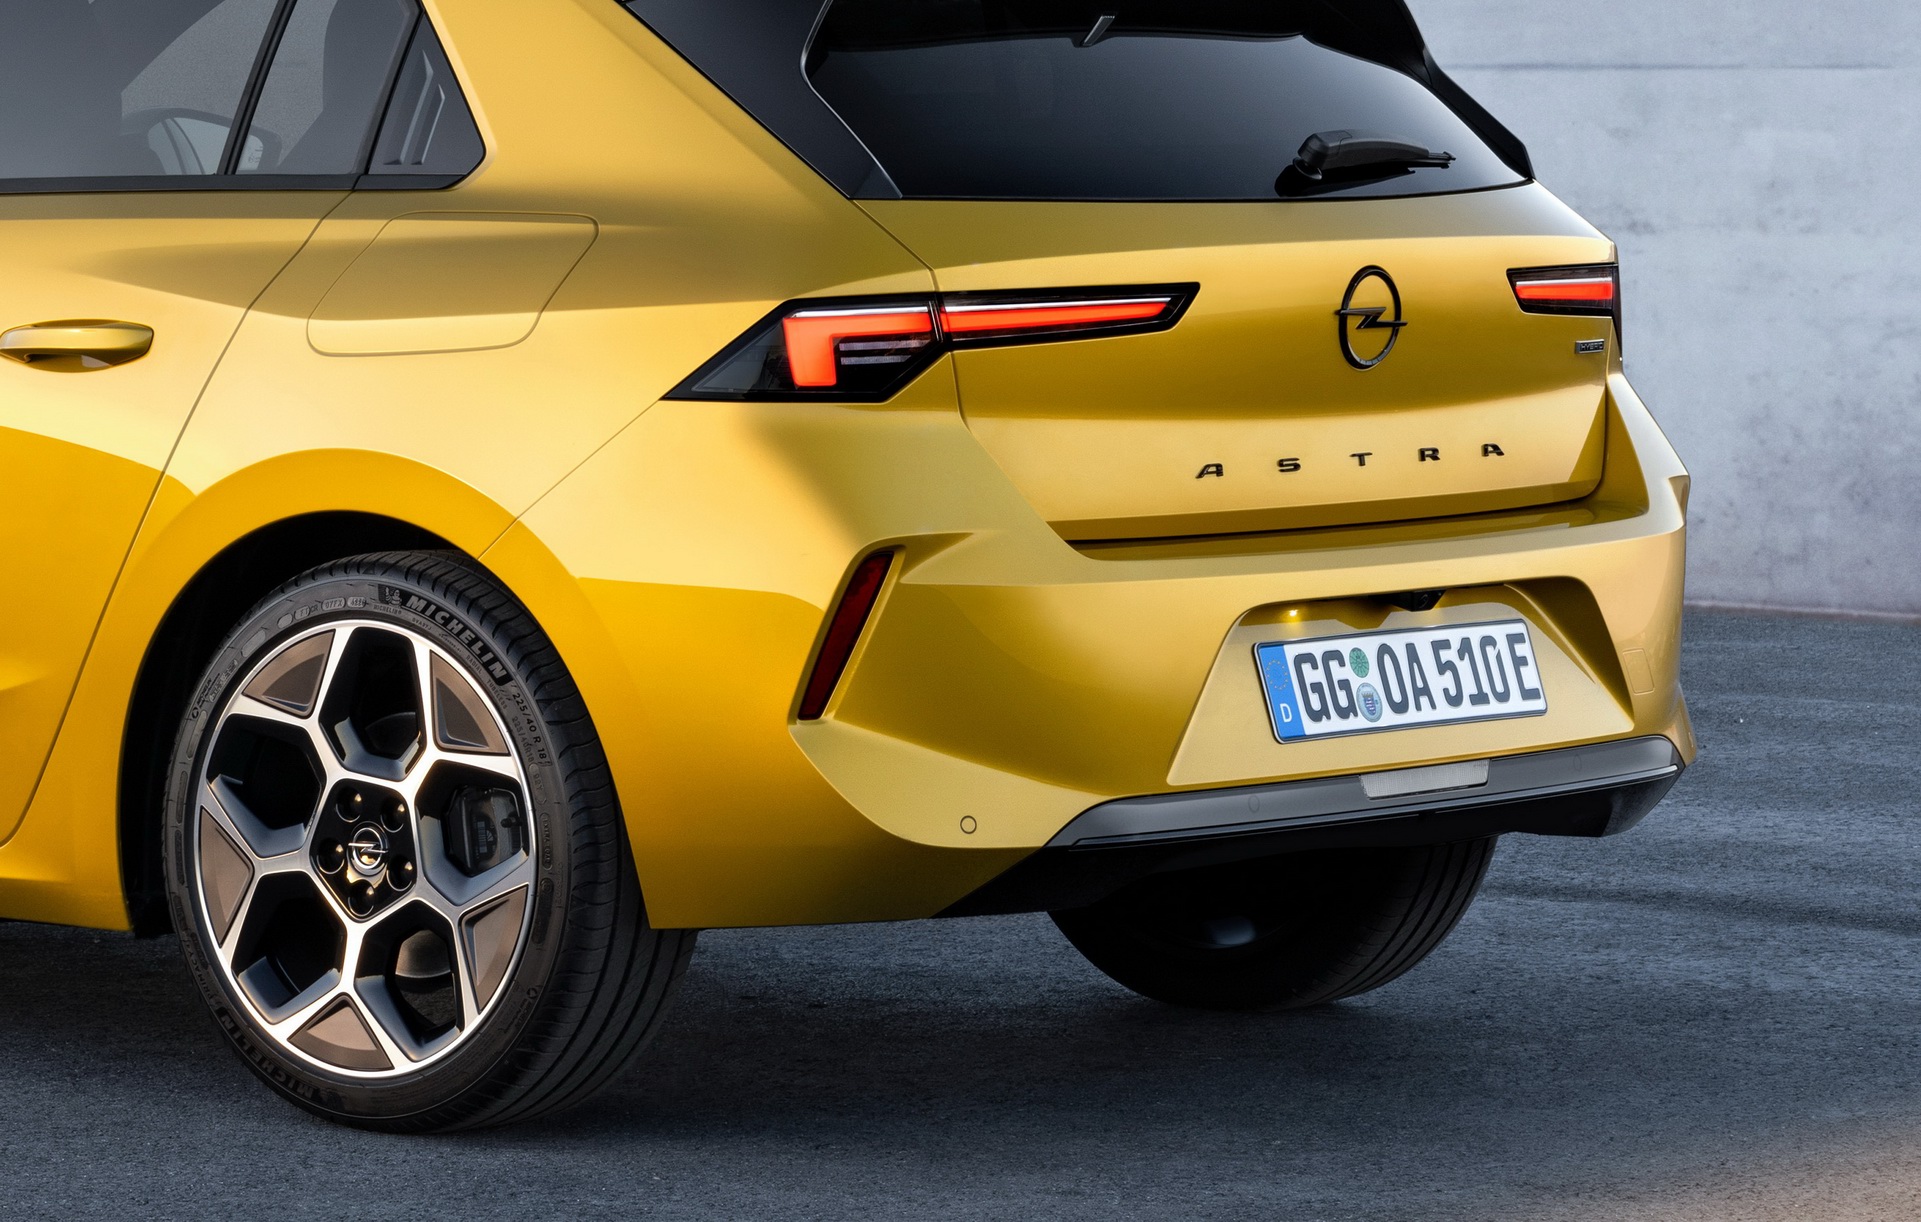 Dettaglio Posteriore nuova Opel Astra 2022